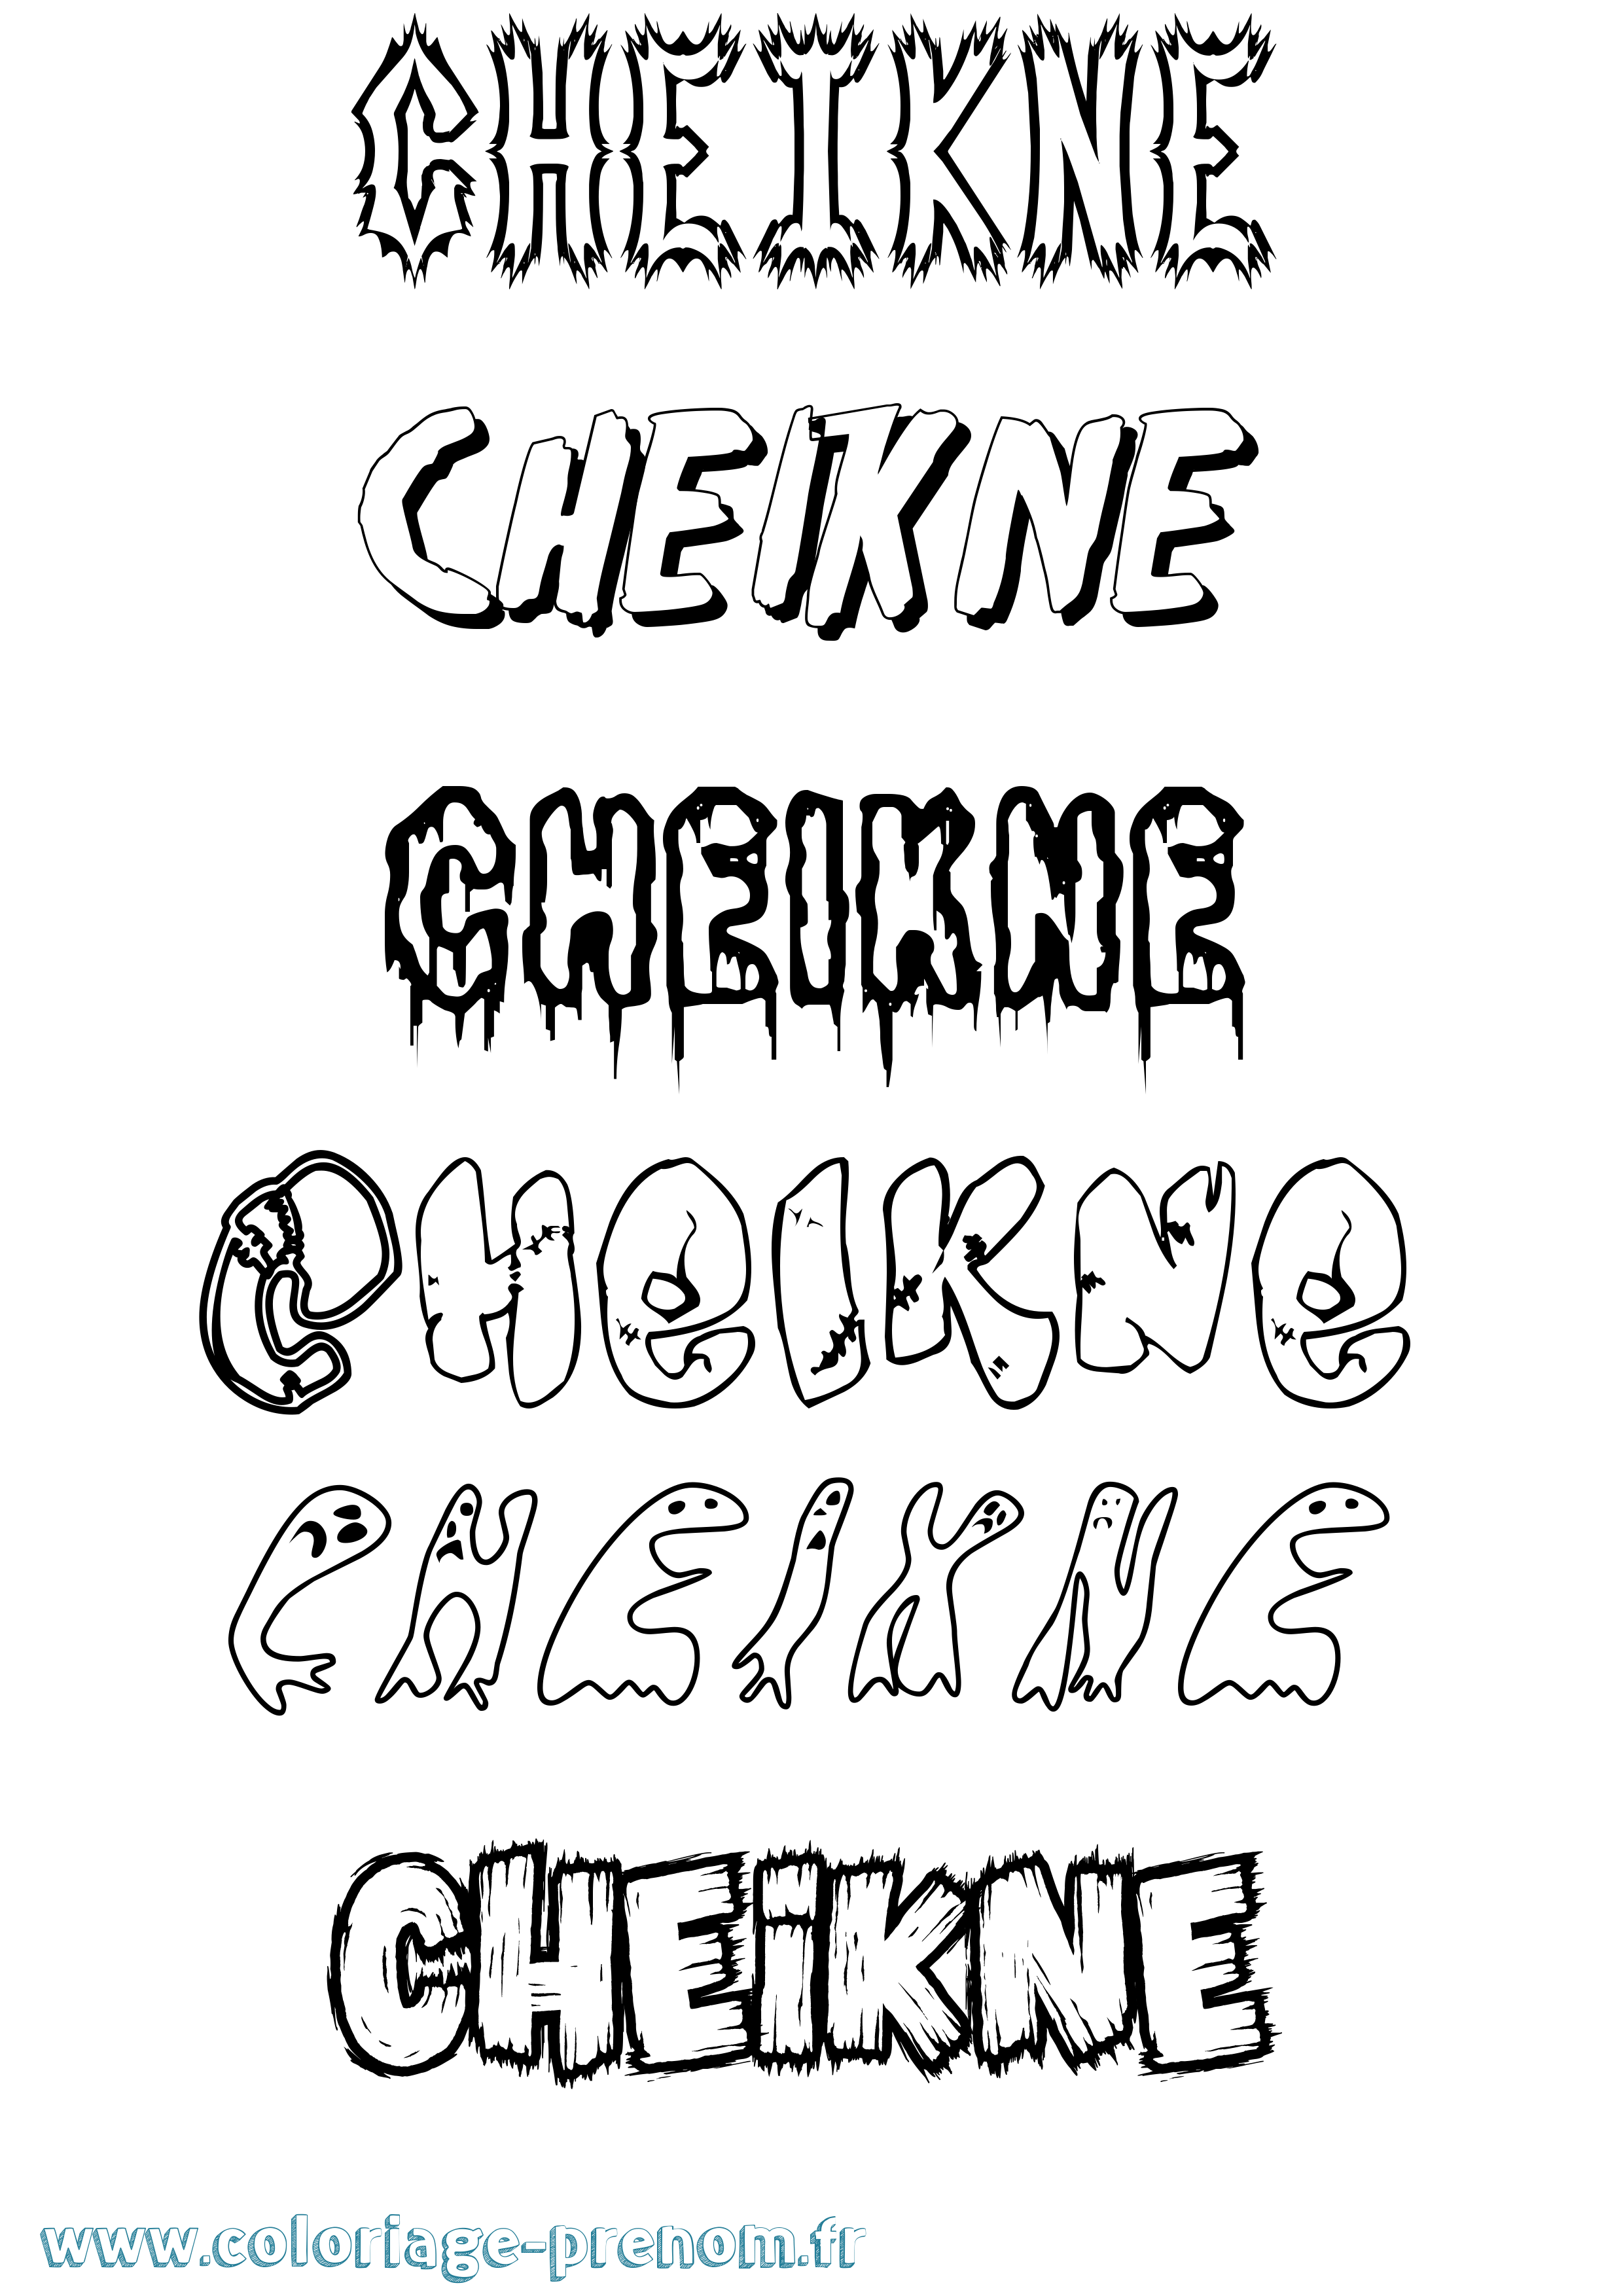 Coloriage prénom Cheikne Frisson